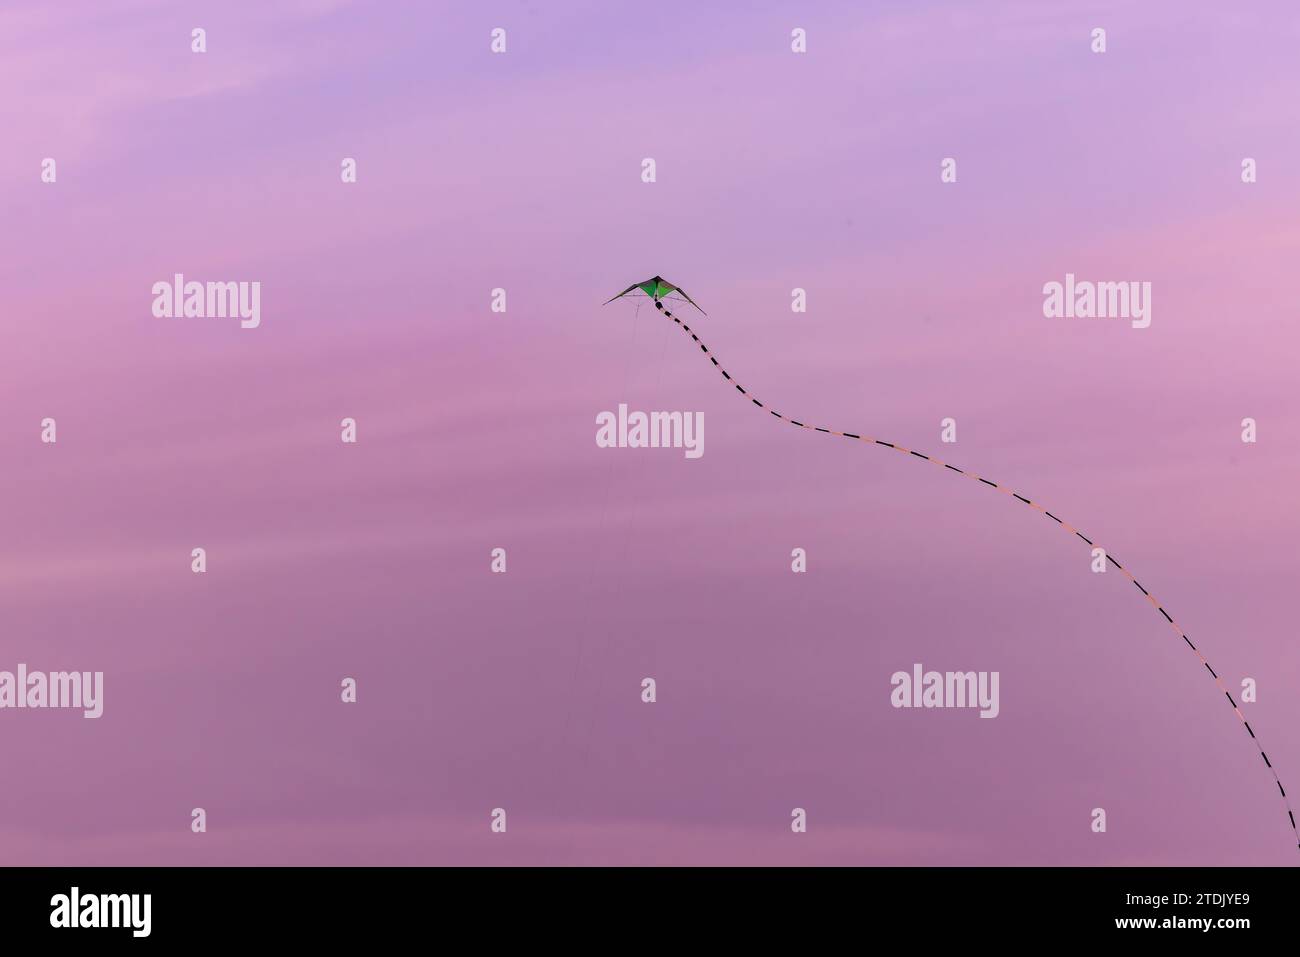 Cerf-volant volant volant à travers le ciel rose et violet du coucher du soleil avec une longue queue tourbillonnante Banque D'Images